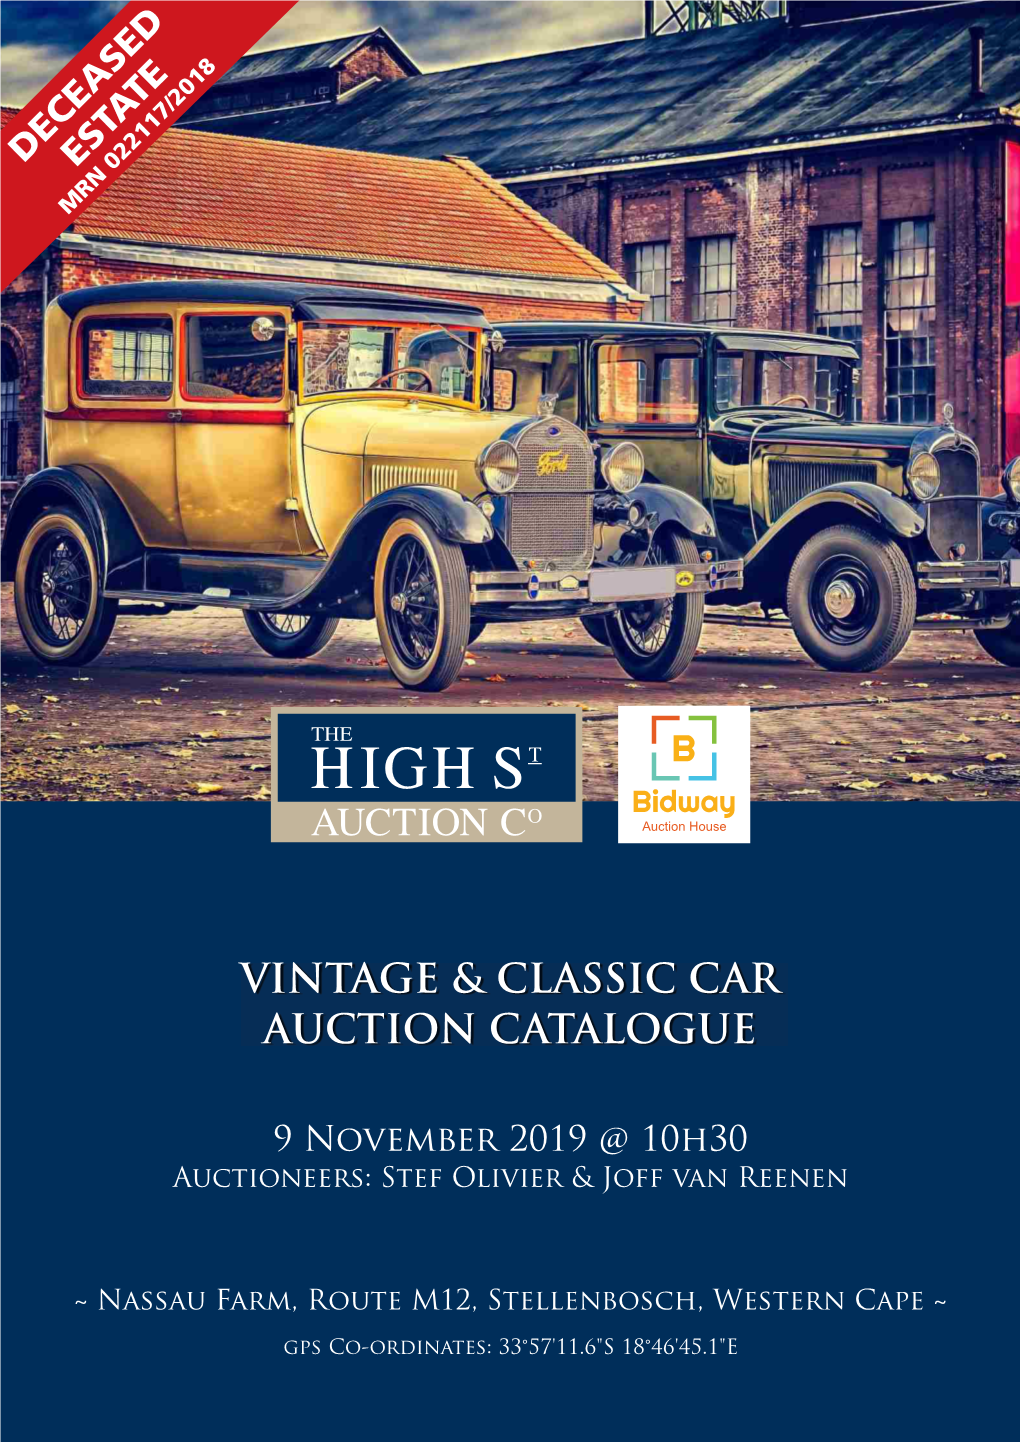 Vintage & Classic Car Auction Catalogue.Cdr